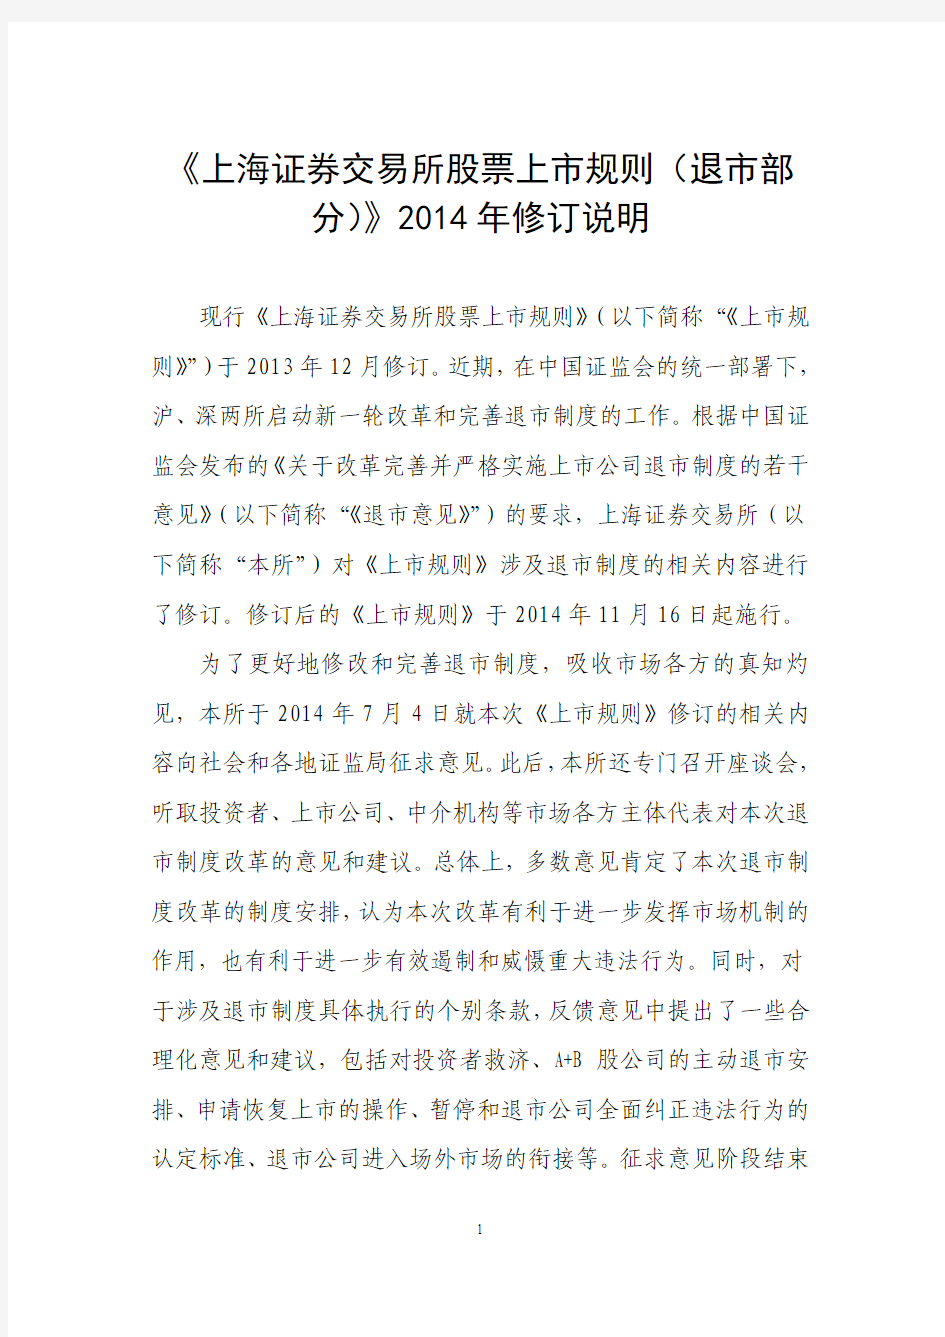 《上海证券交易所股票上市规则(退市部分)》2014年修订说明